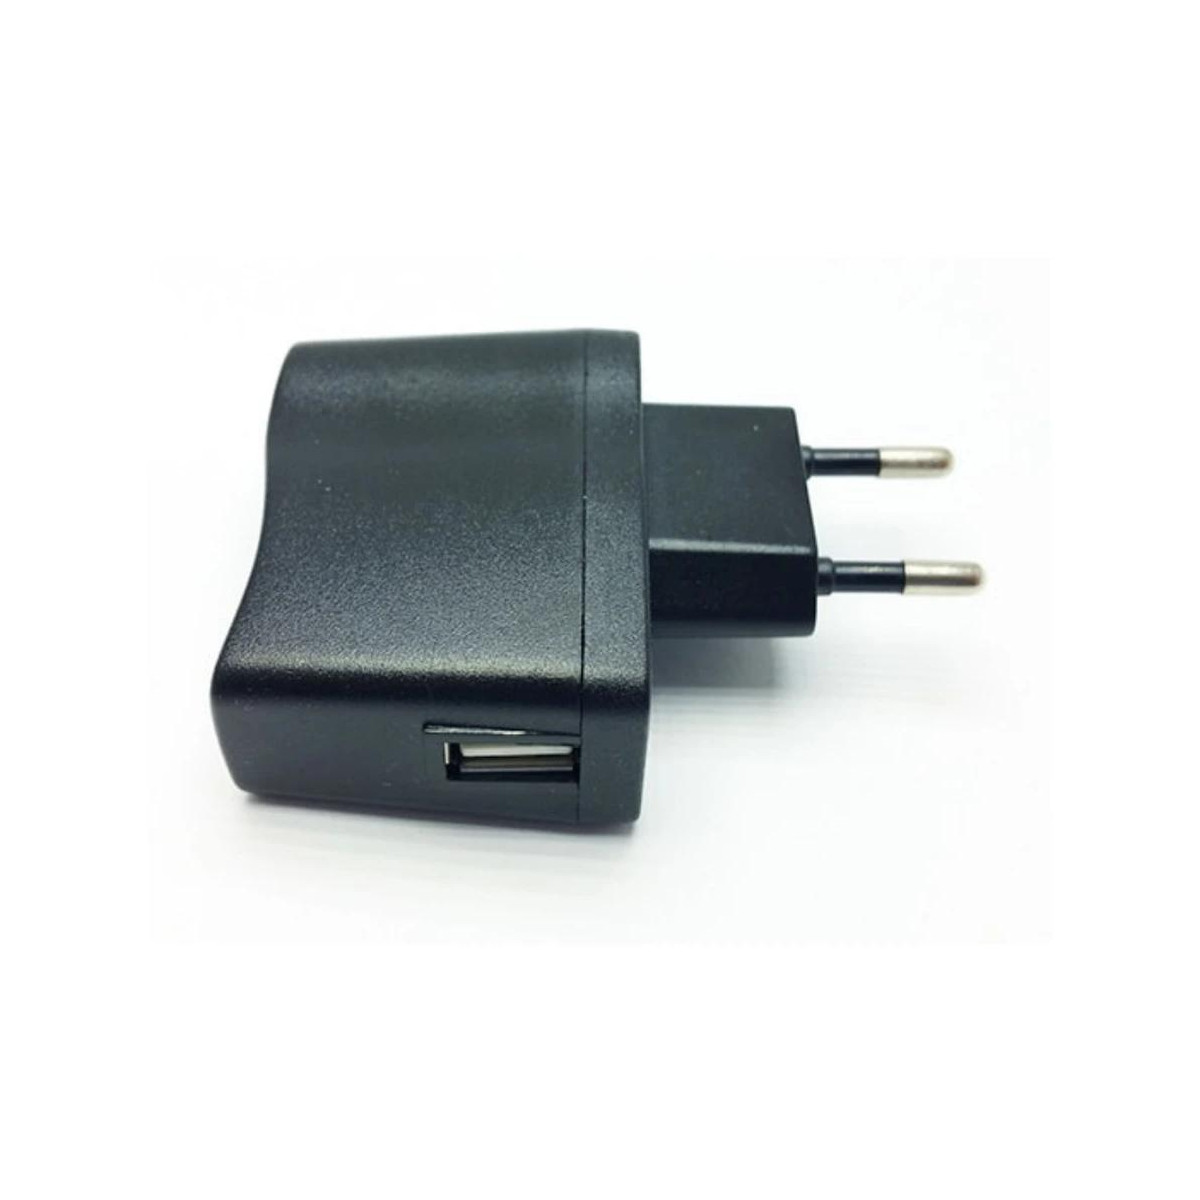 More about Univerzální 5V adaptér pro USB kabely